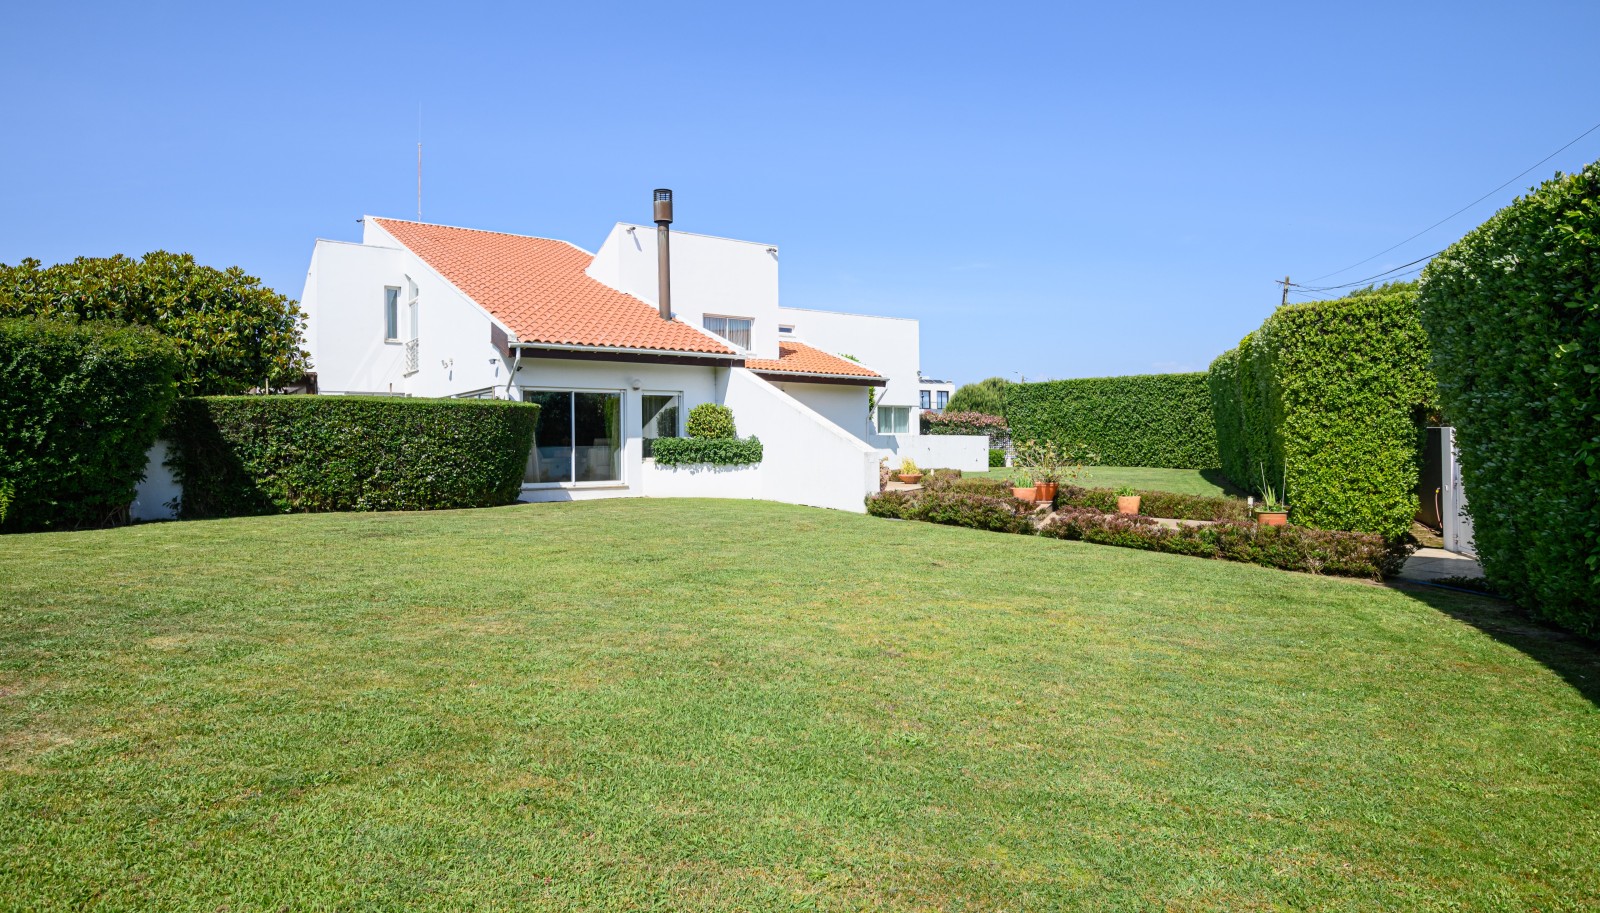 Villa mit Pool und Garten, zu verkaufen, in Valadares, V. N. Gaia, Portugal_227041